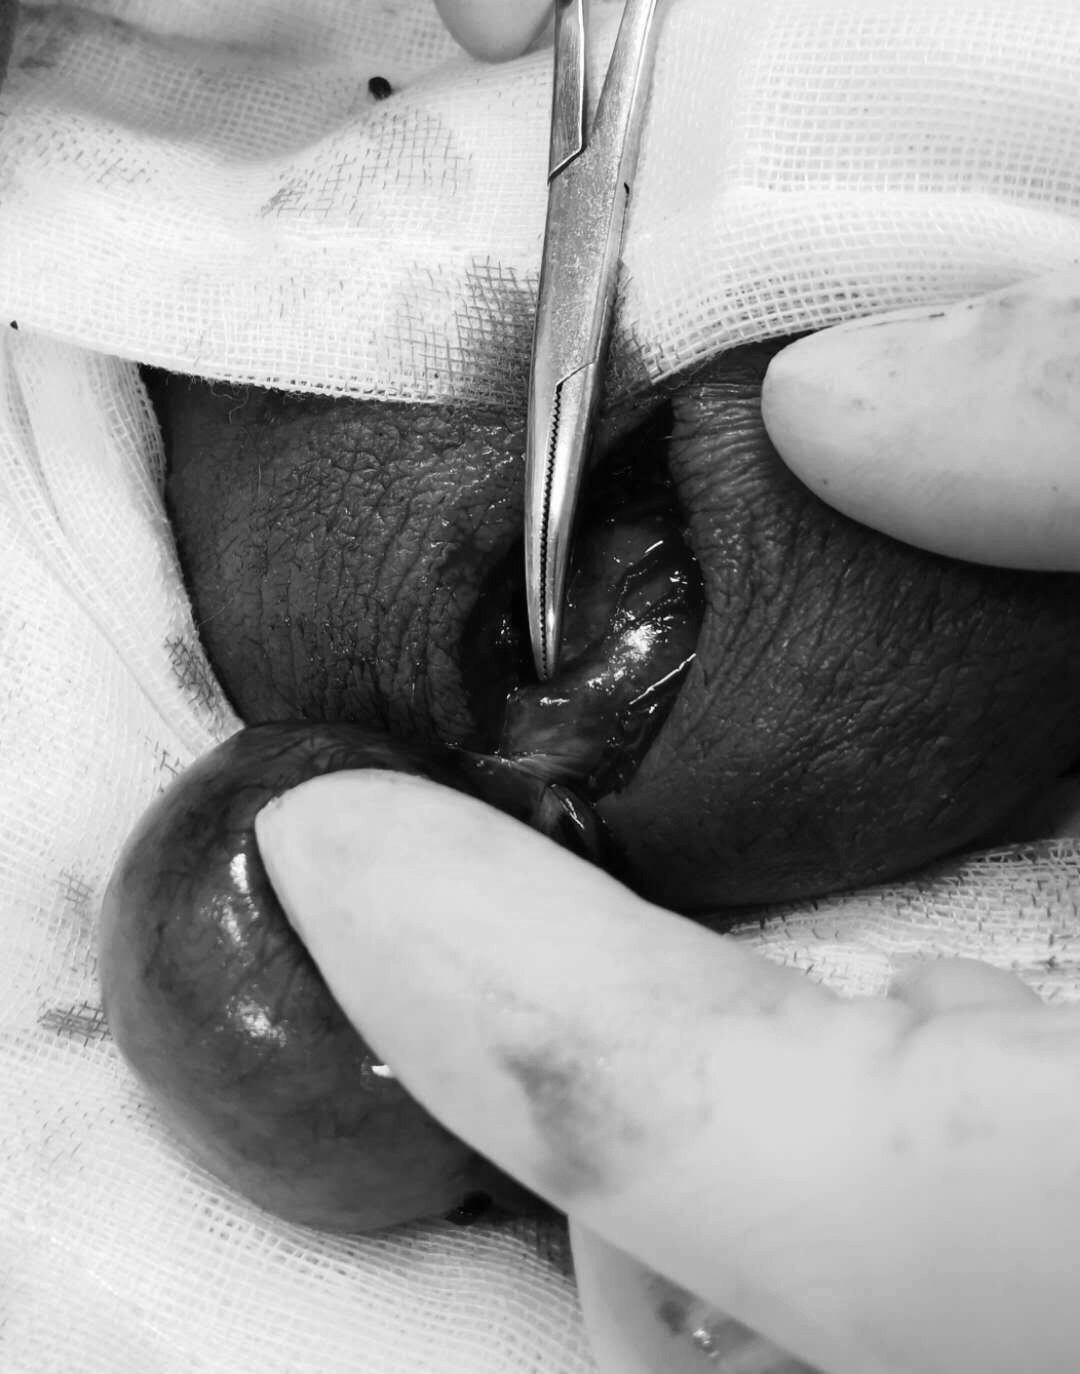 选择睾丸复位固定术 对侧睾丸固定术;如睾丸坏死,早期行病侧睾丸切除